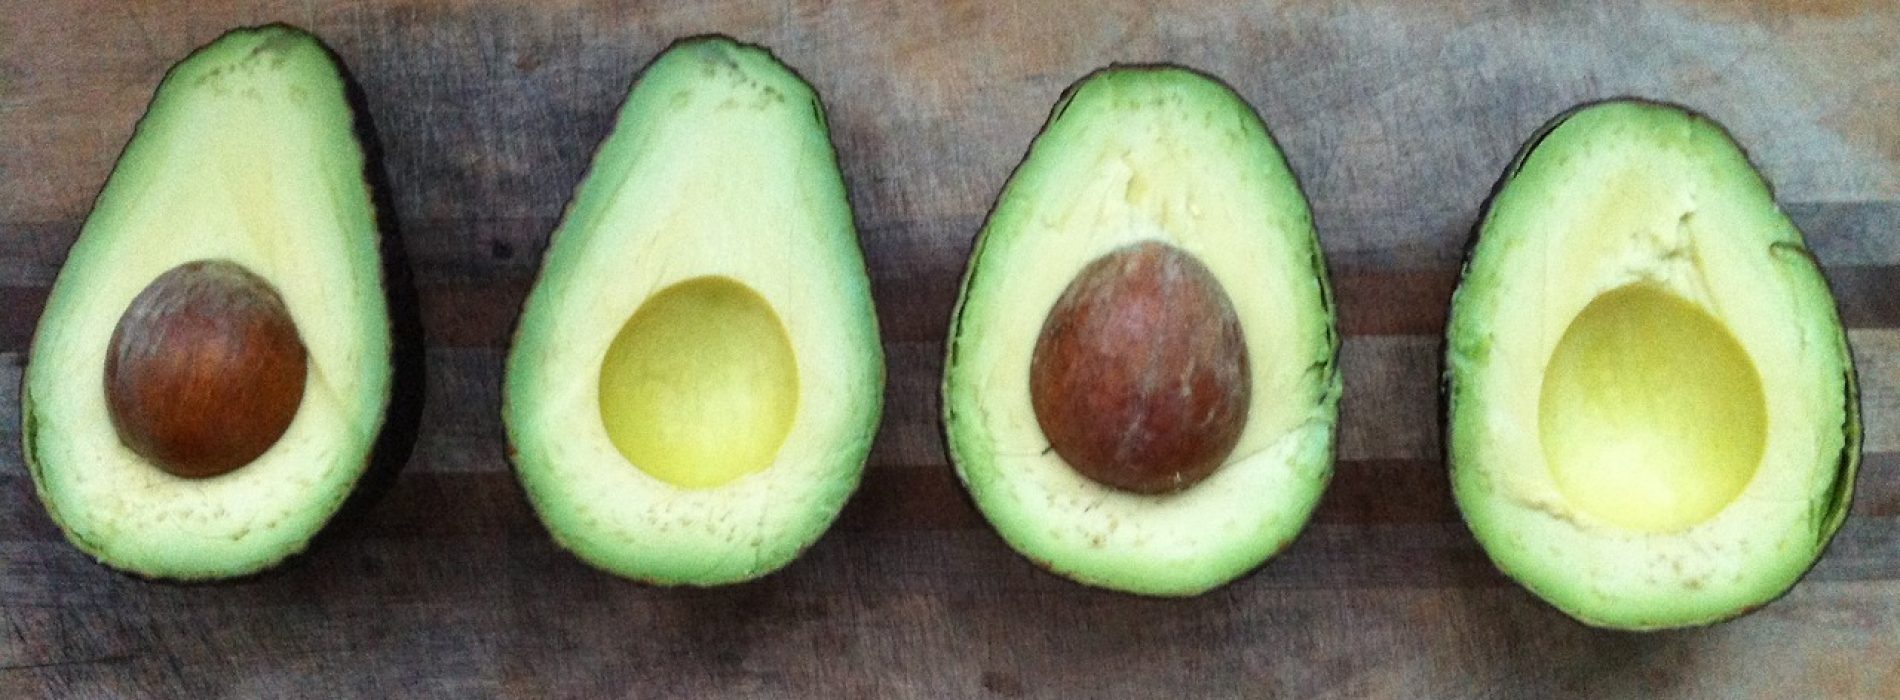 Wat het gezondste deel van een avocado is? Dit had ik echt never nooit verwacht!